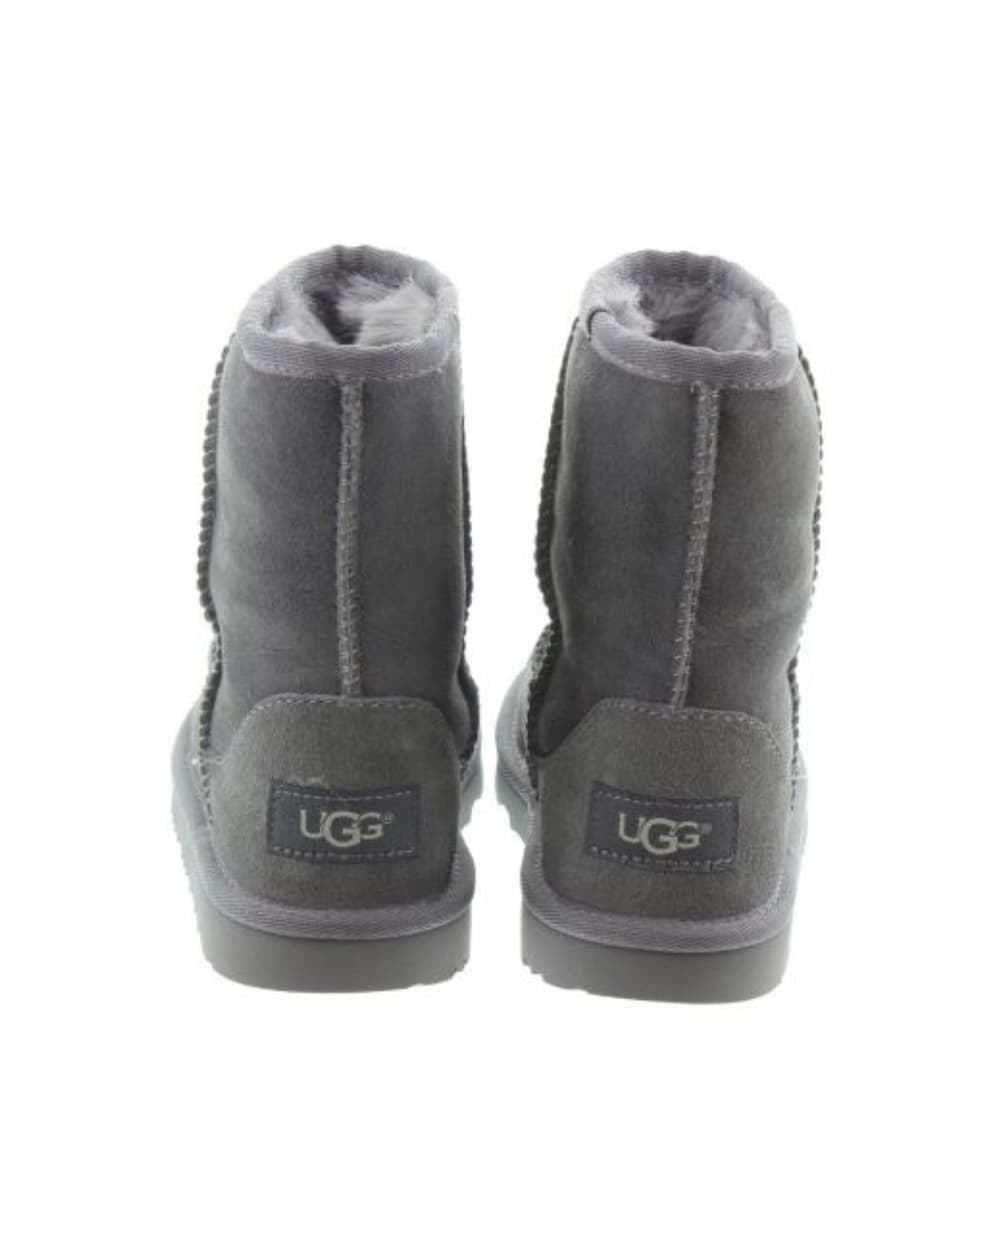 Ugg Classic II Boot Gray Kids - Image 2